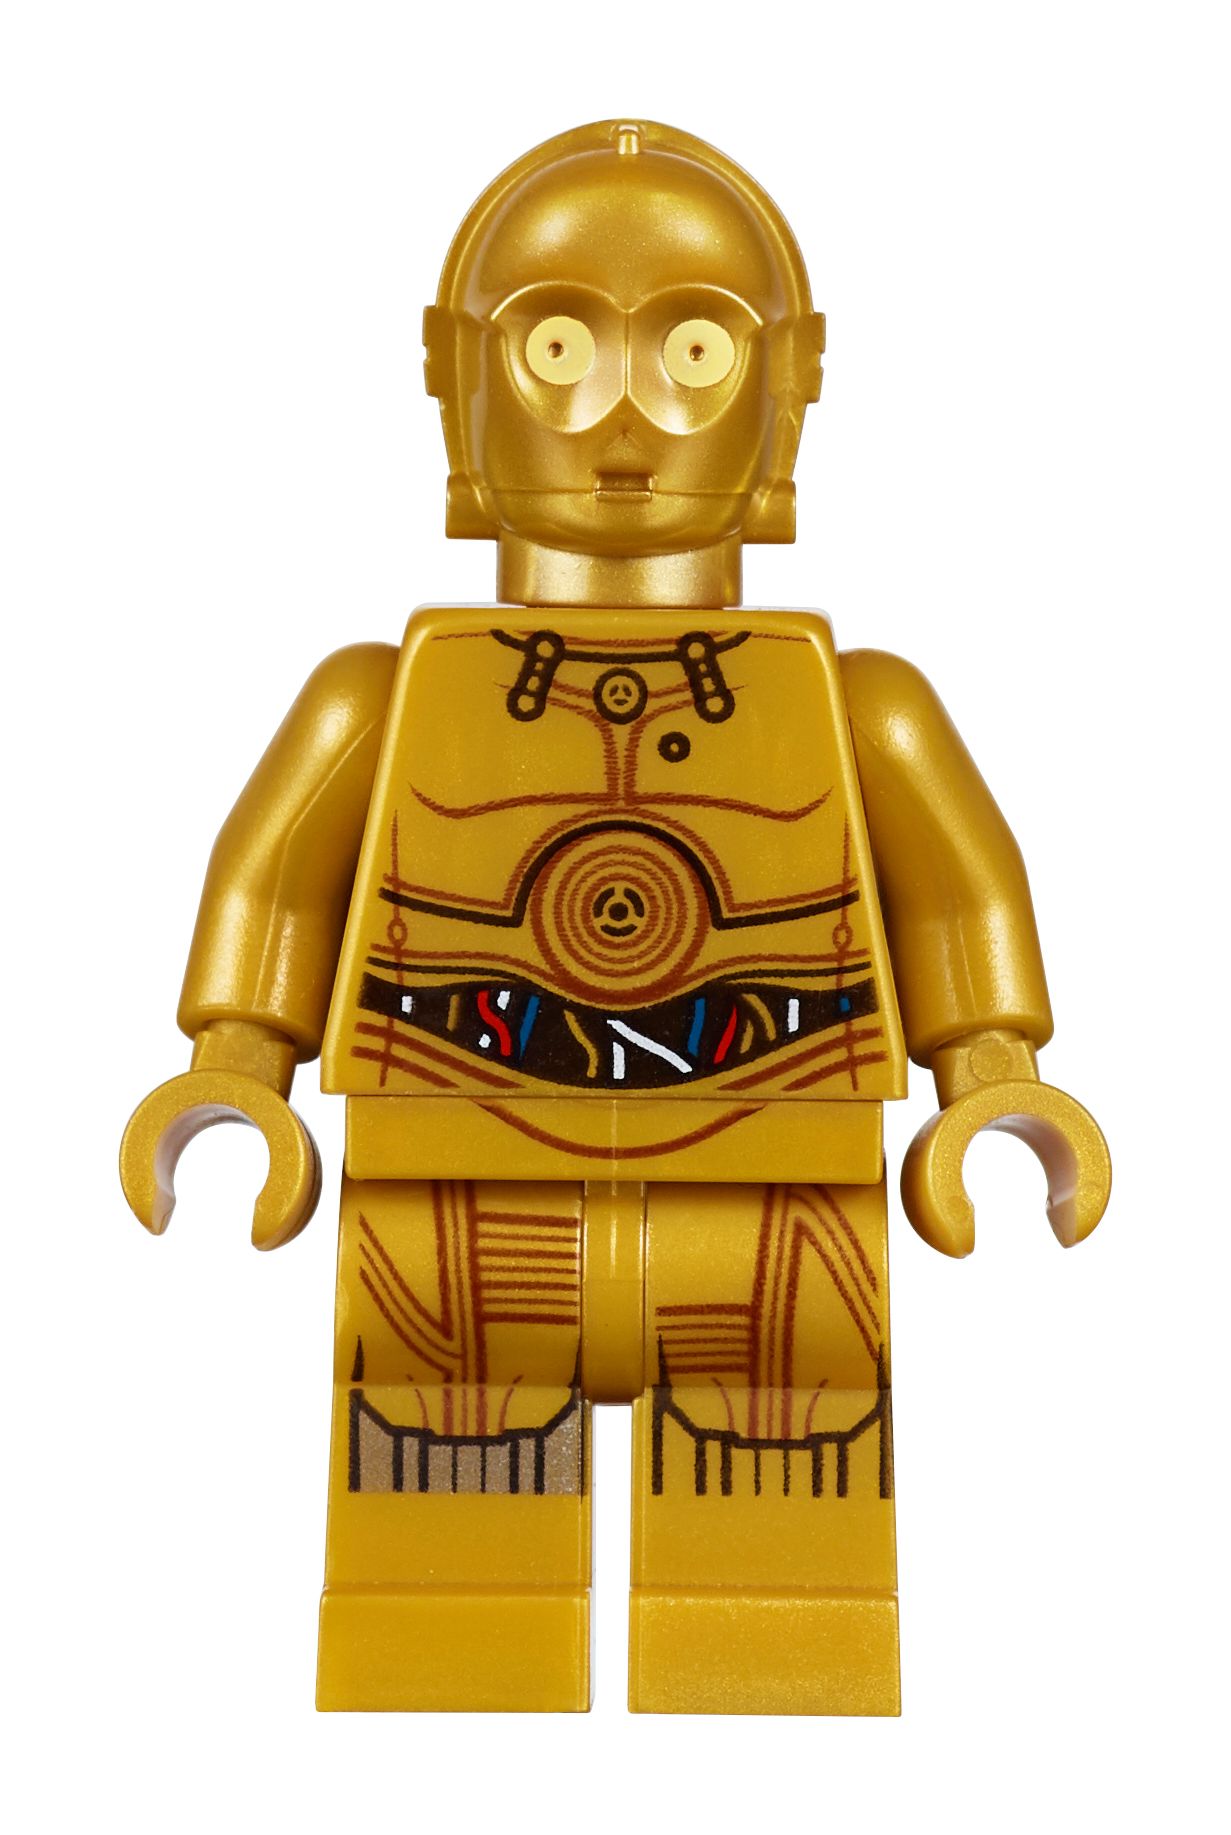 LEGO Star Wars 75244 Tantive IV LEGO_75244_alt17.jpg